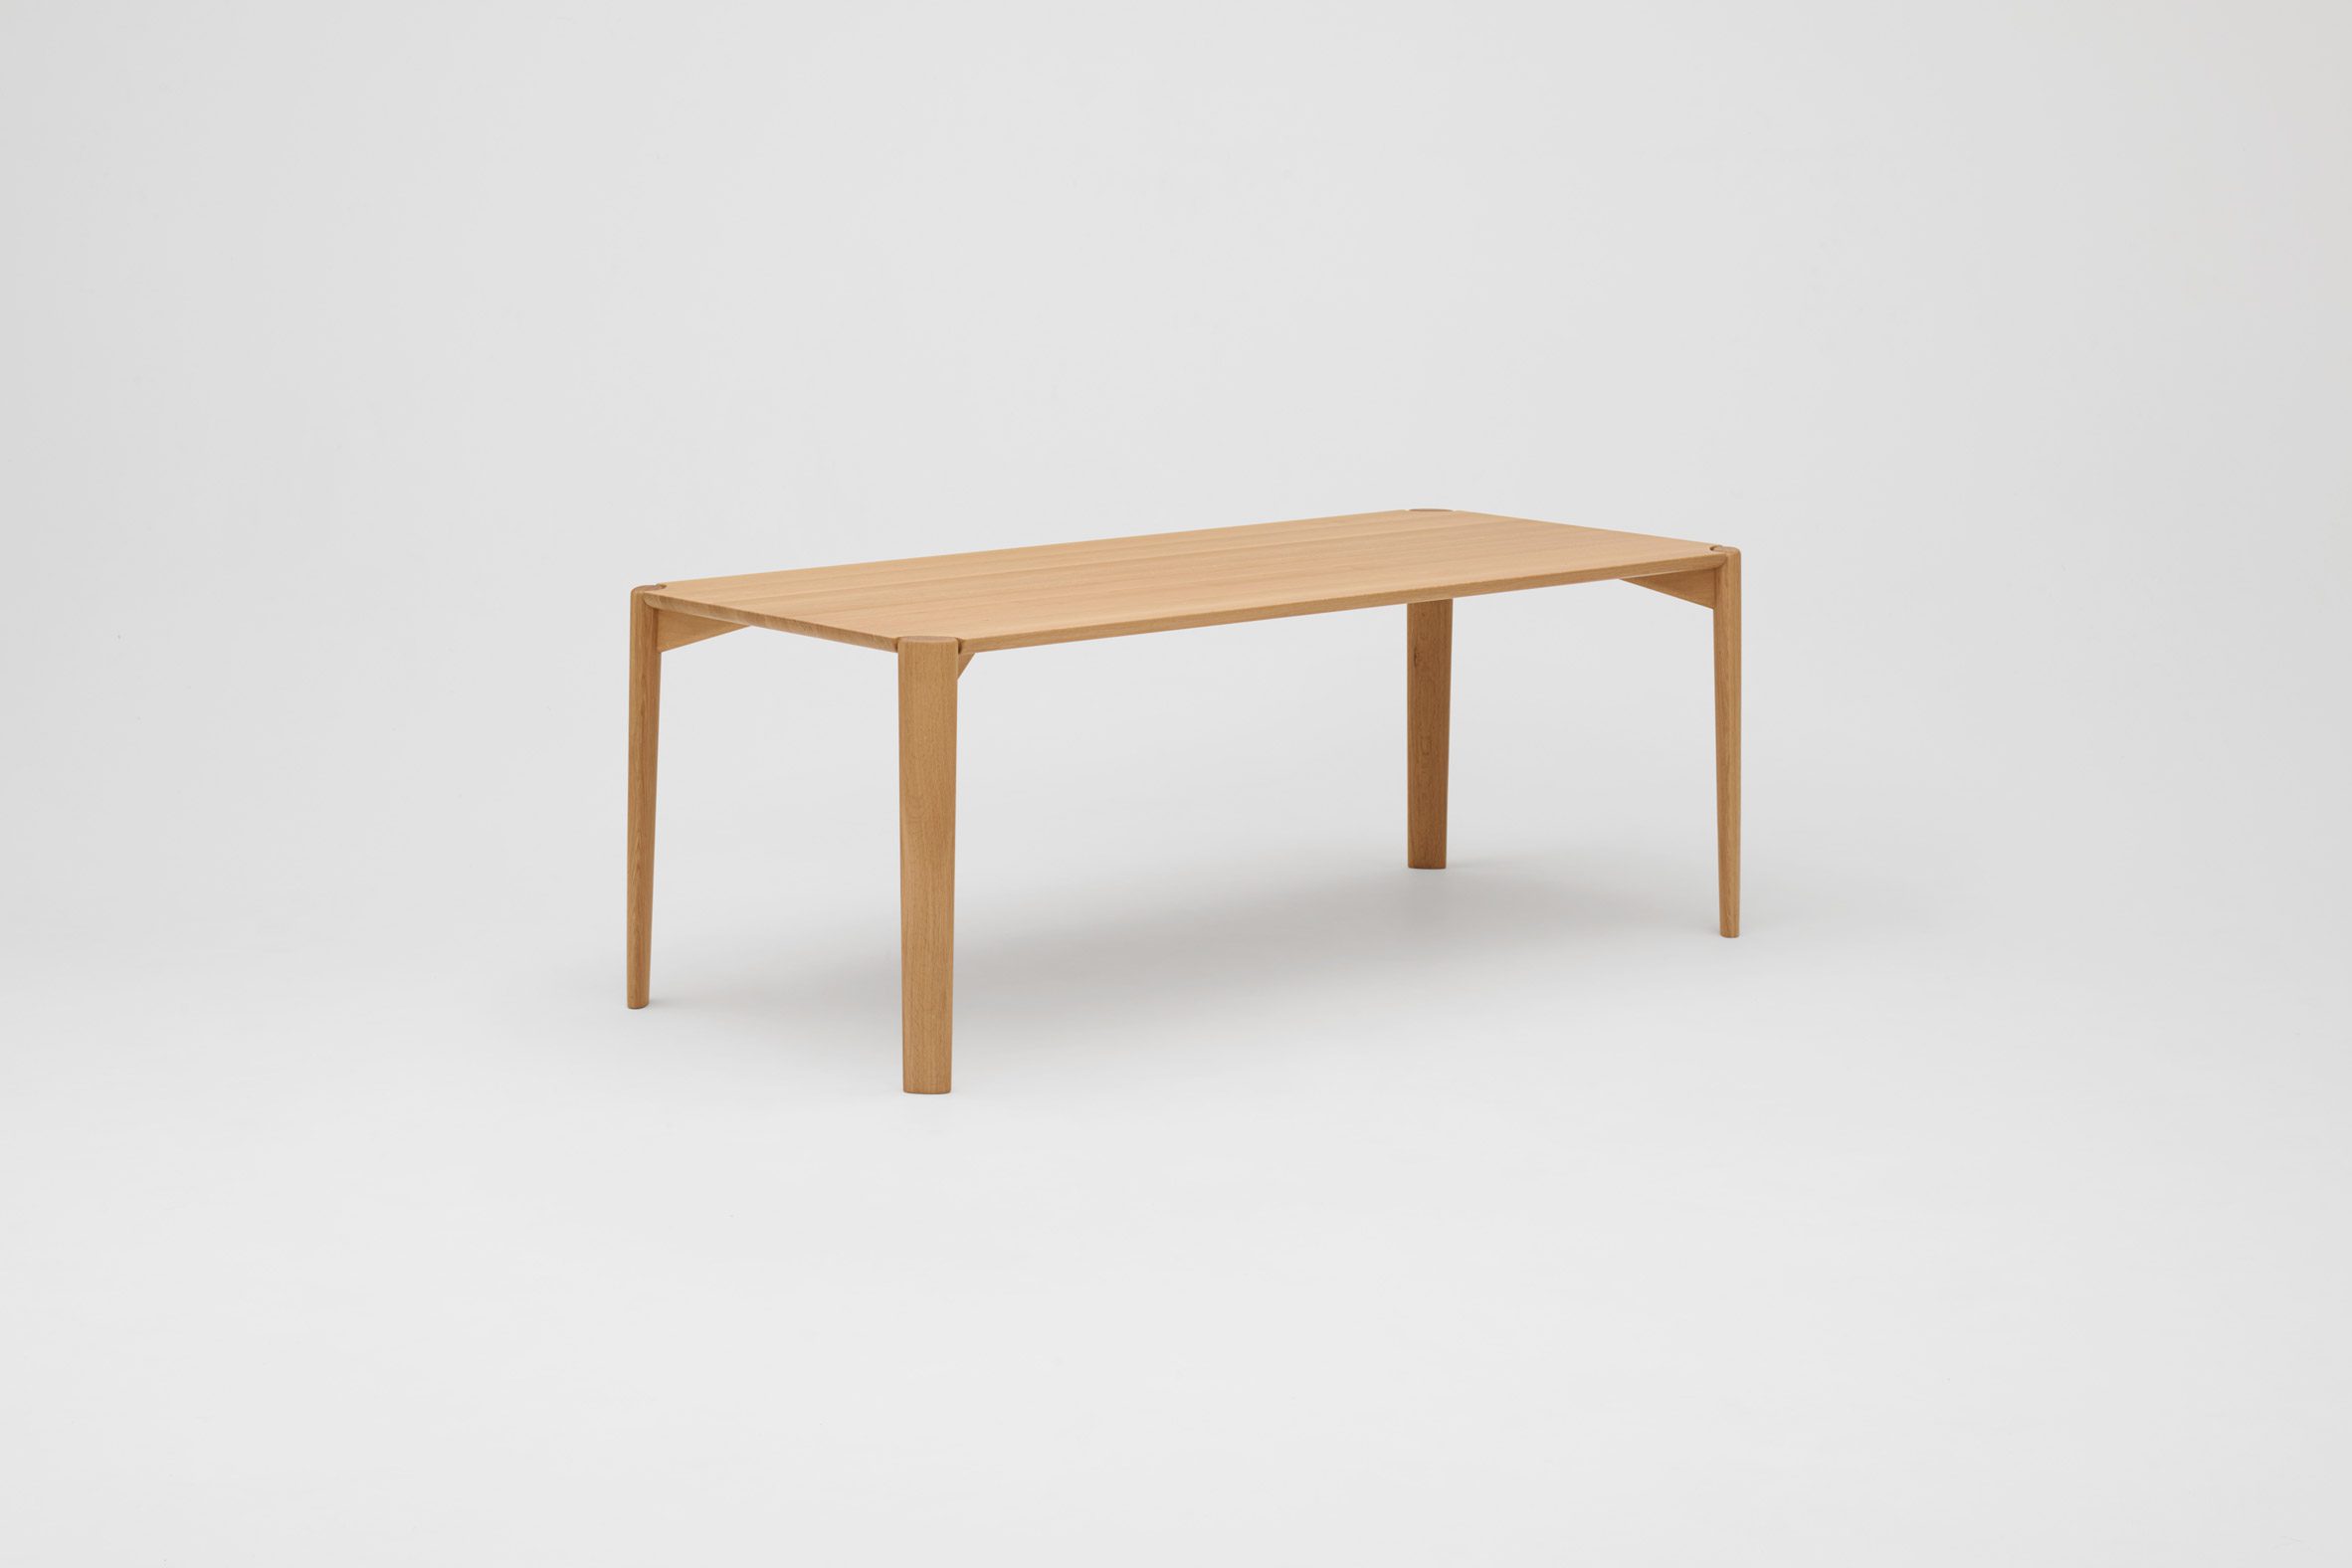 Solid oak table by Ronan & Erwan Bouroullec for Koyori